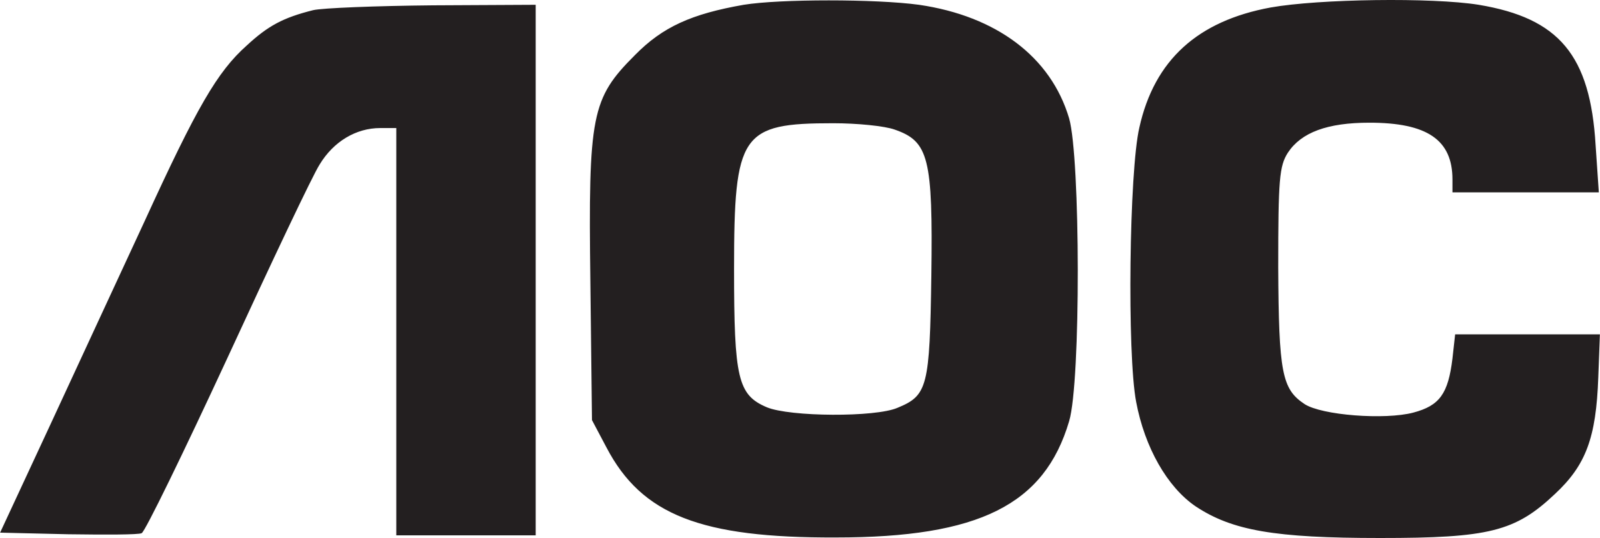 Aoc Logo